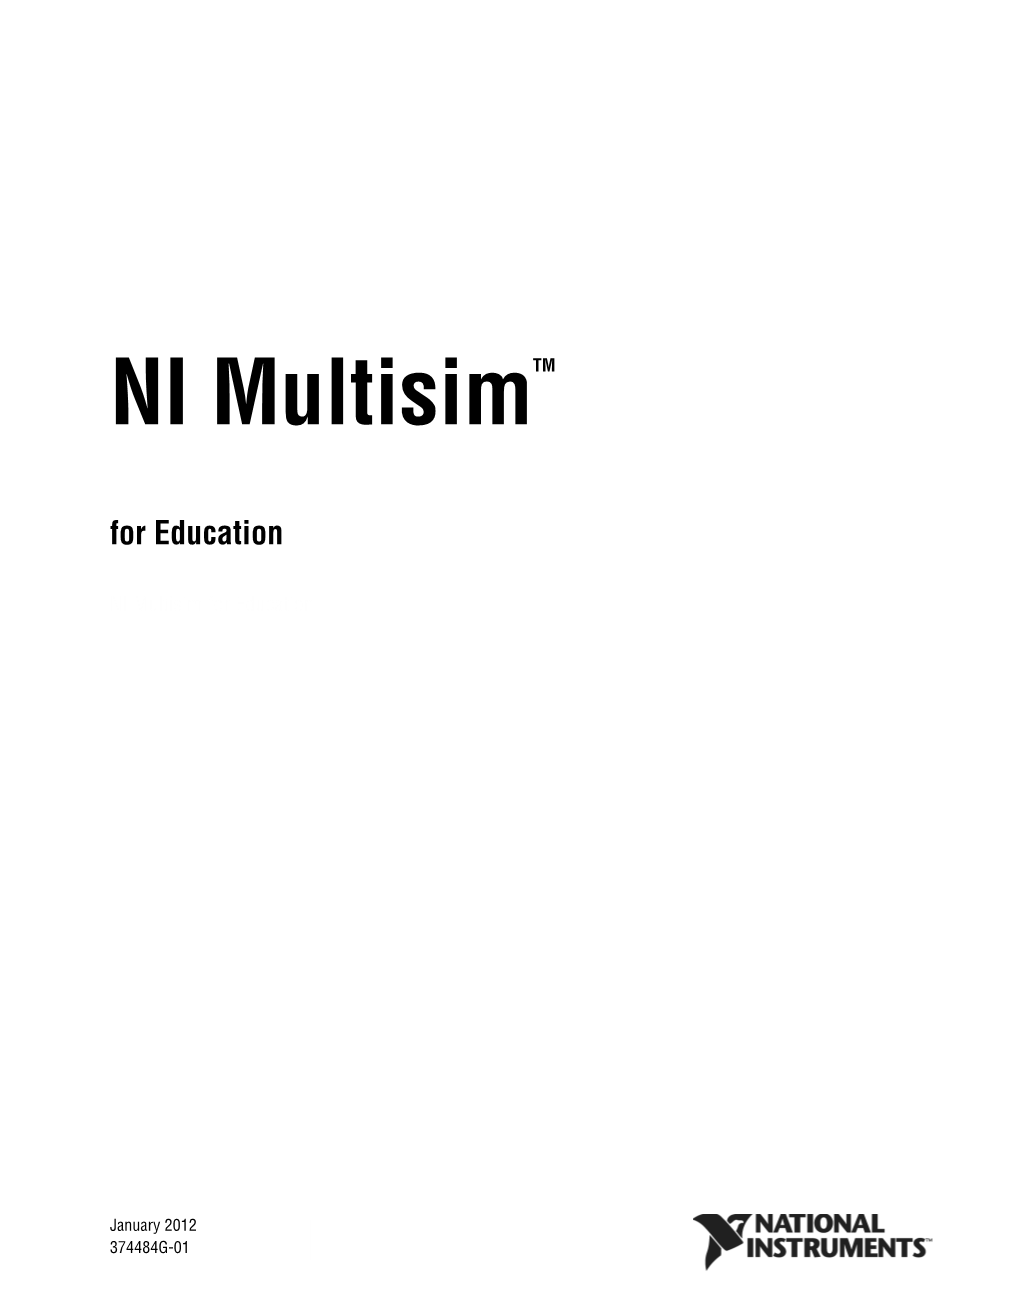 NI Multisim for Education